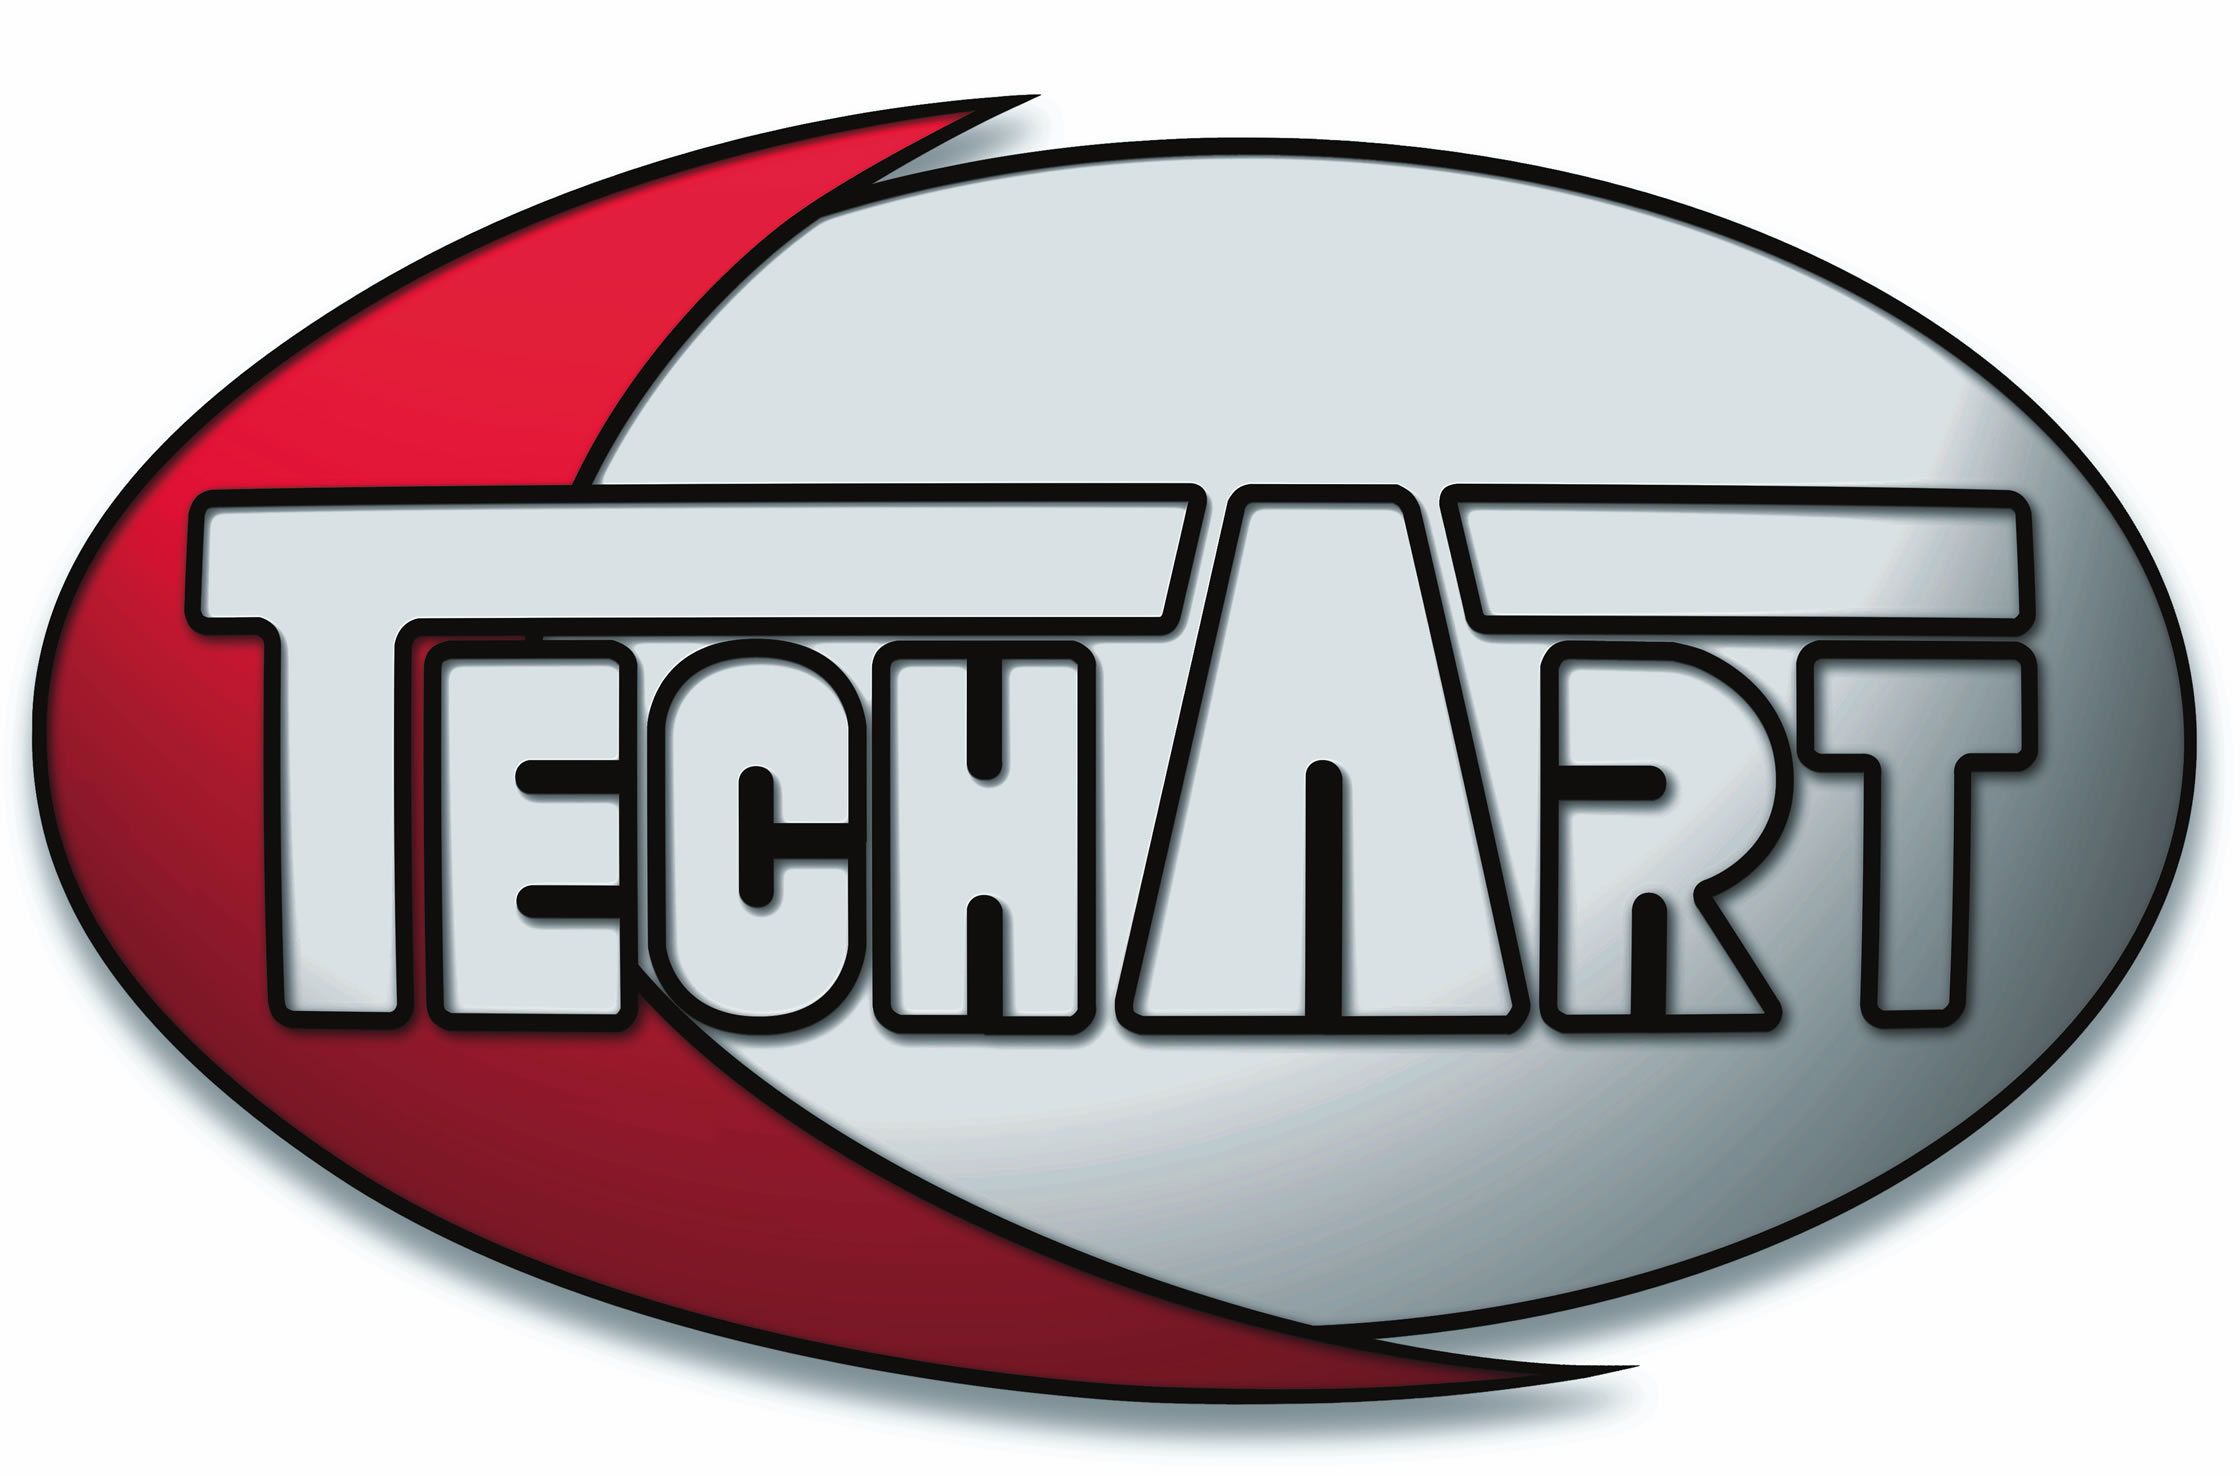 techart Logo photo - 1